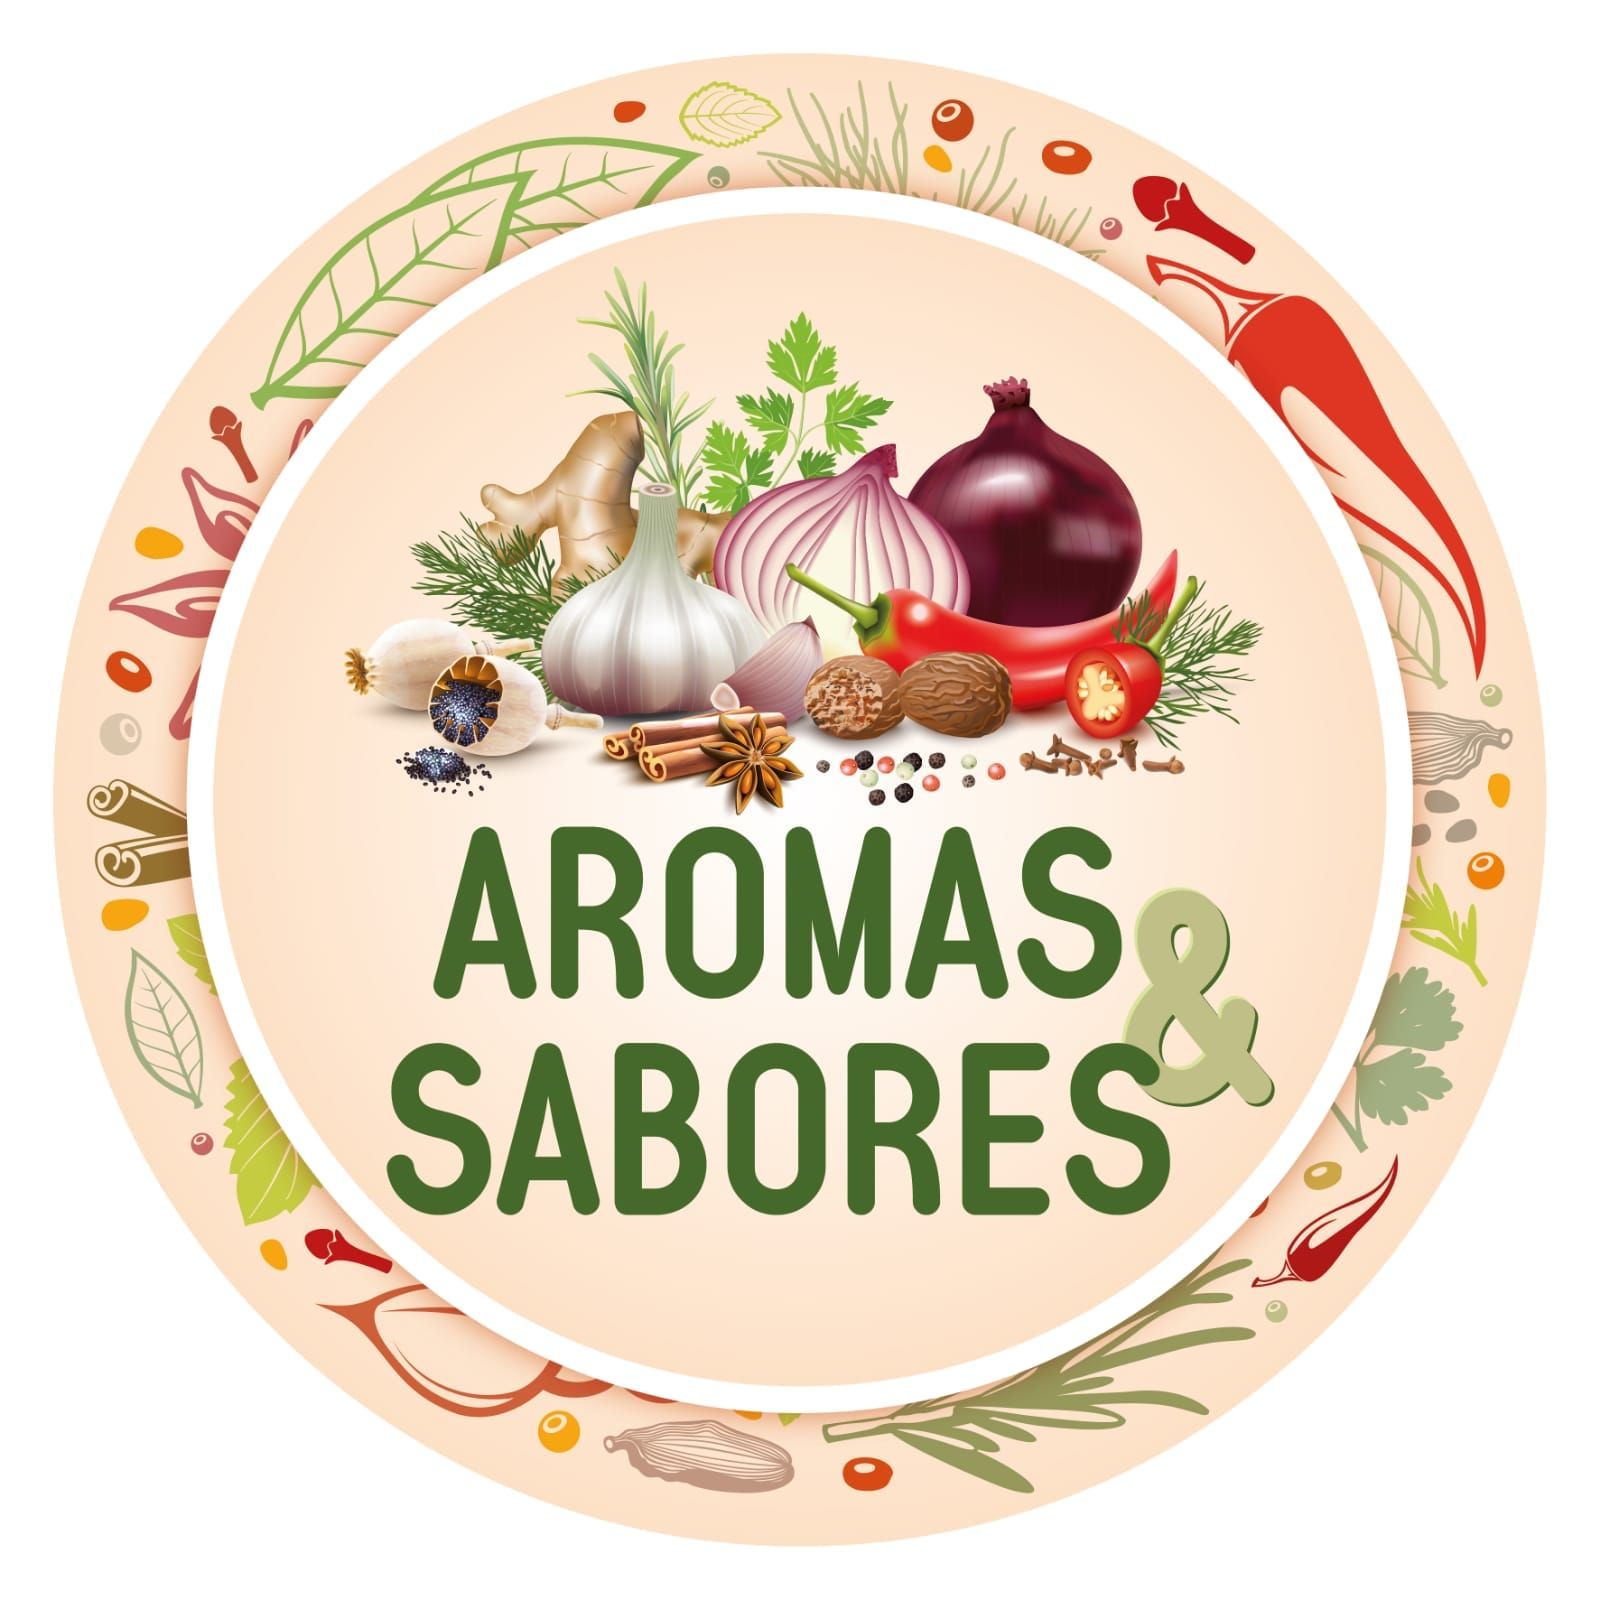 Aromas & Sabores